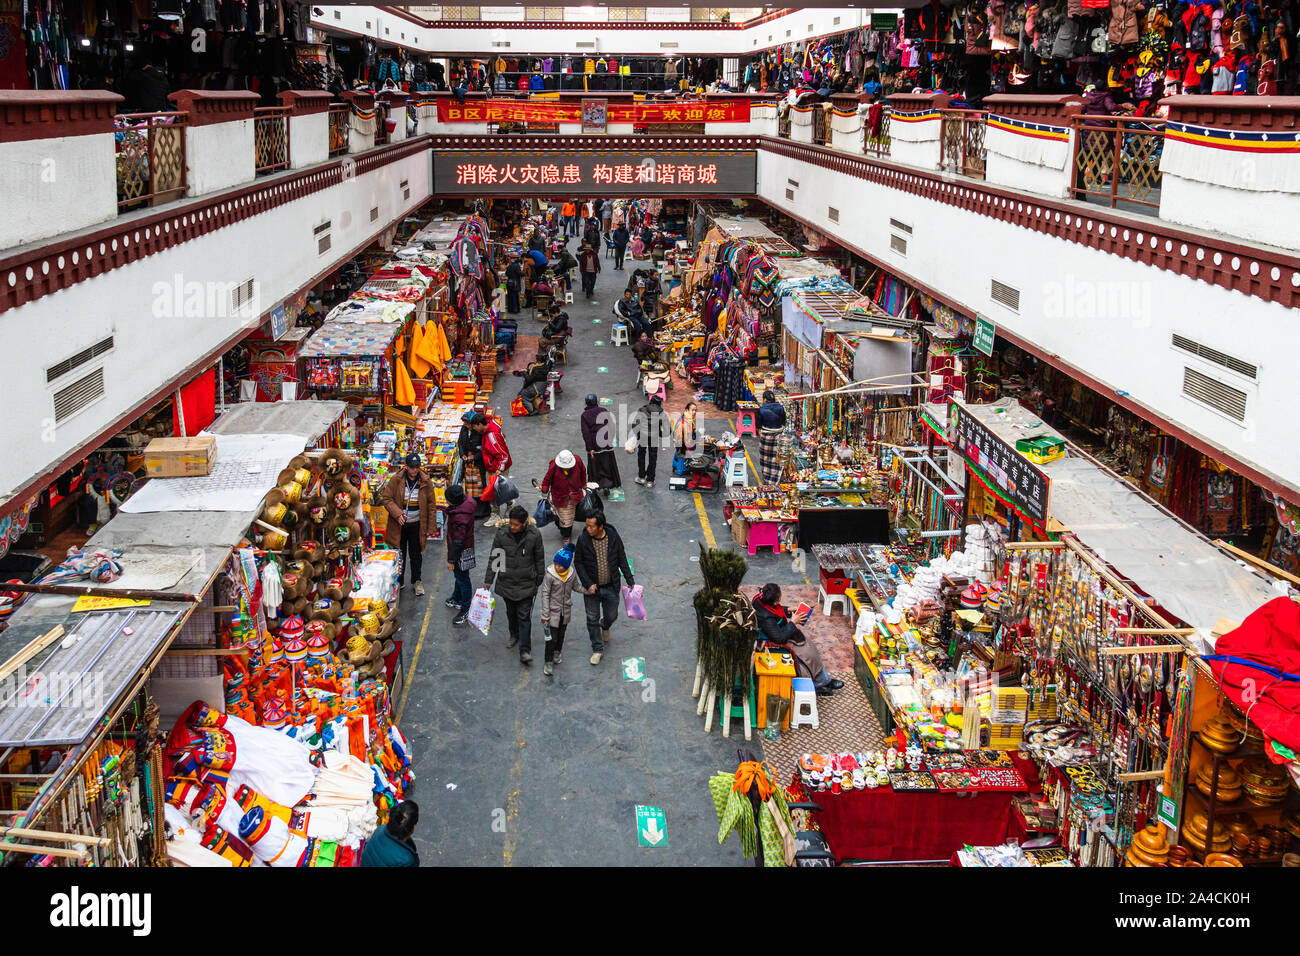 Lhasa, China - El 12 de diciembre de 2018: la gente tienda de productos tradicionales y artesanías en el mercado Dropenling en Lhasa en el Tíbet. Foto de stock